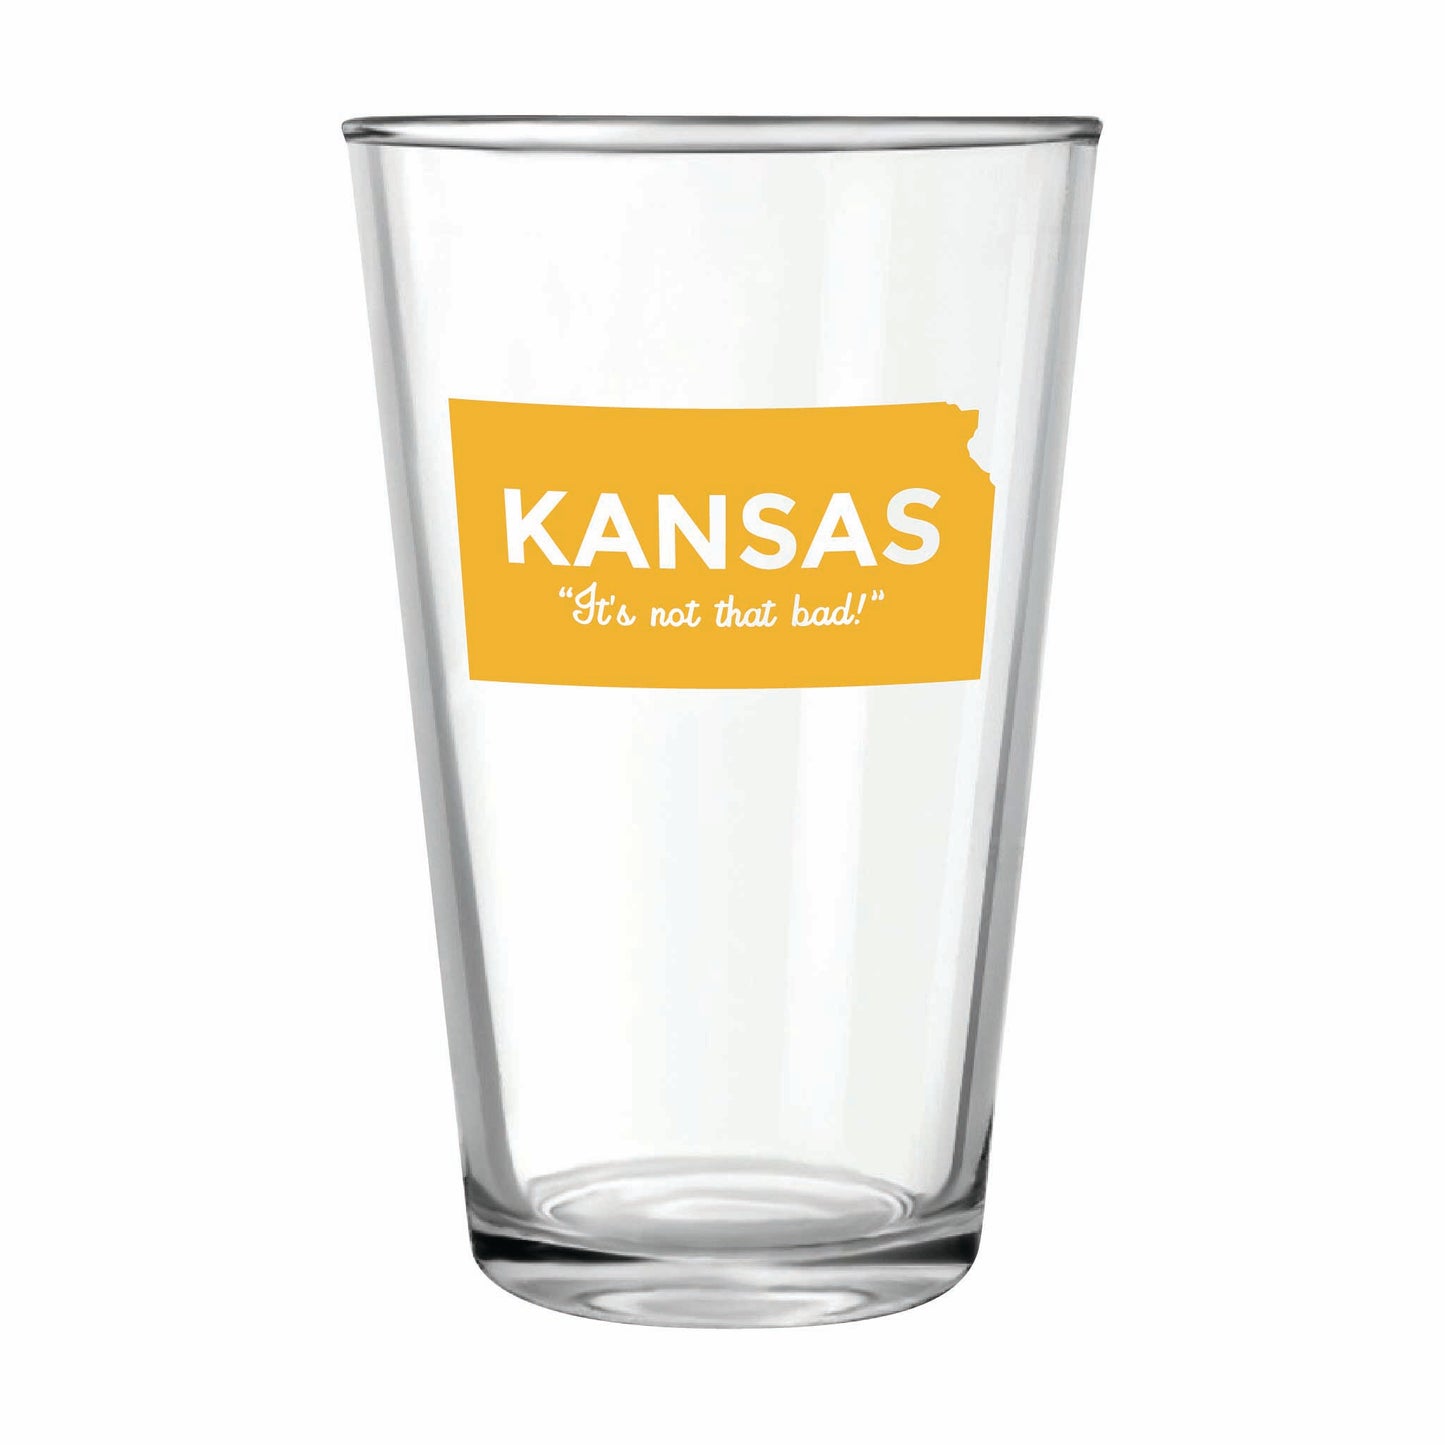 Kansas "It's Not That Bad!" Pint